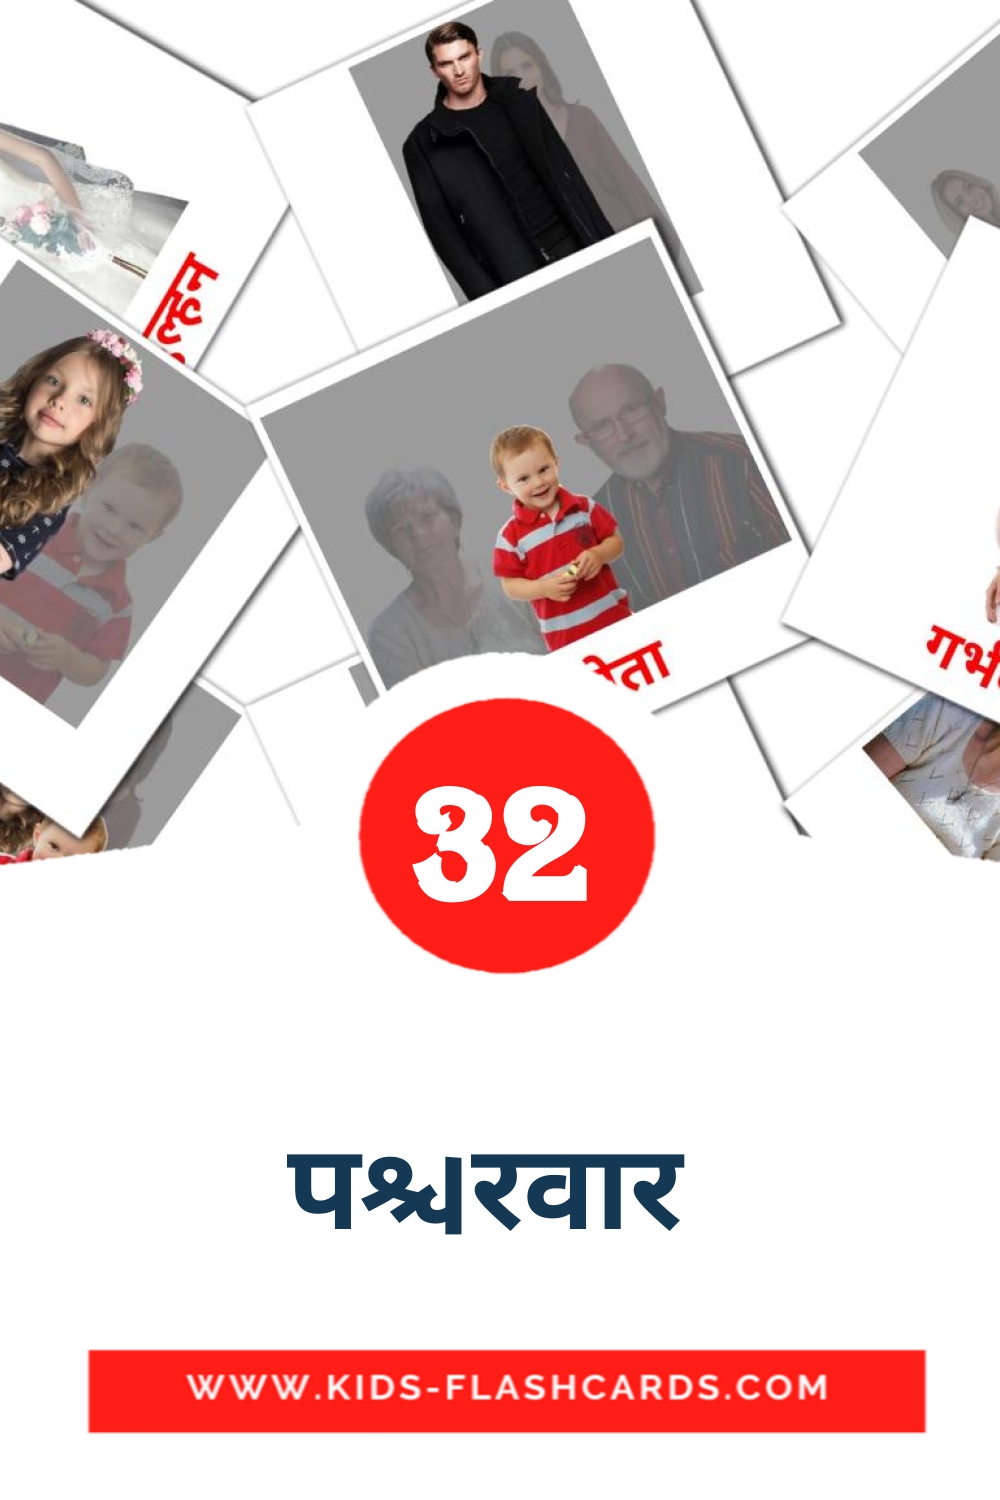 32 carte illustrate di परिवार  per la scuola materna in hindi